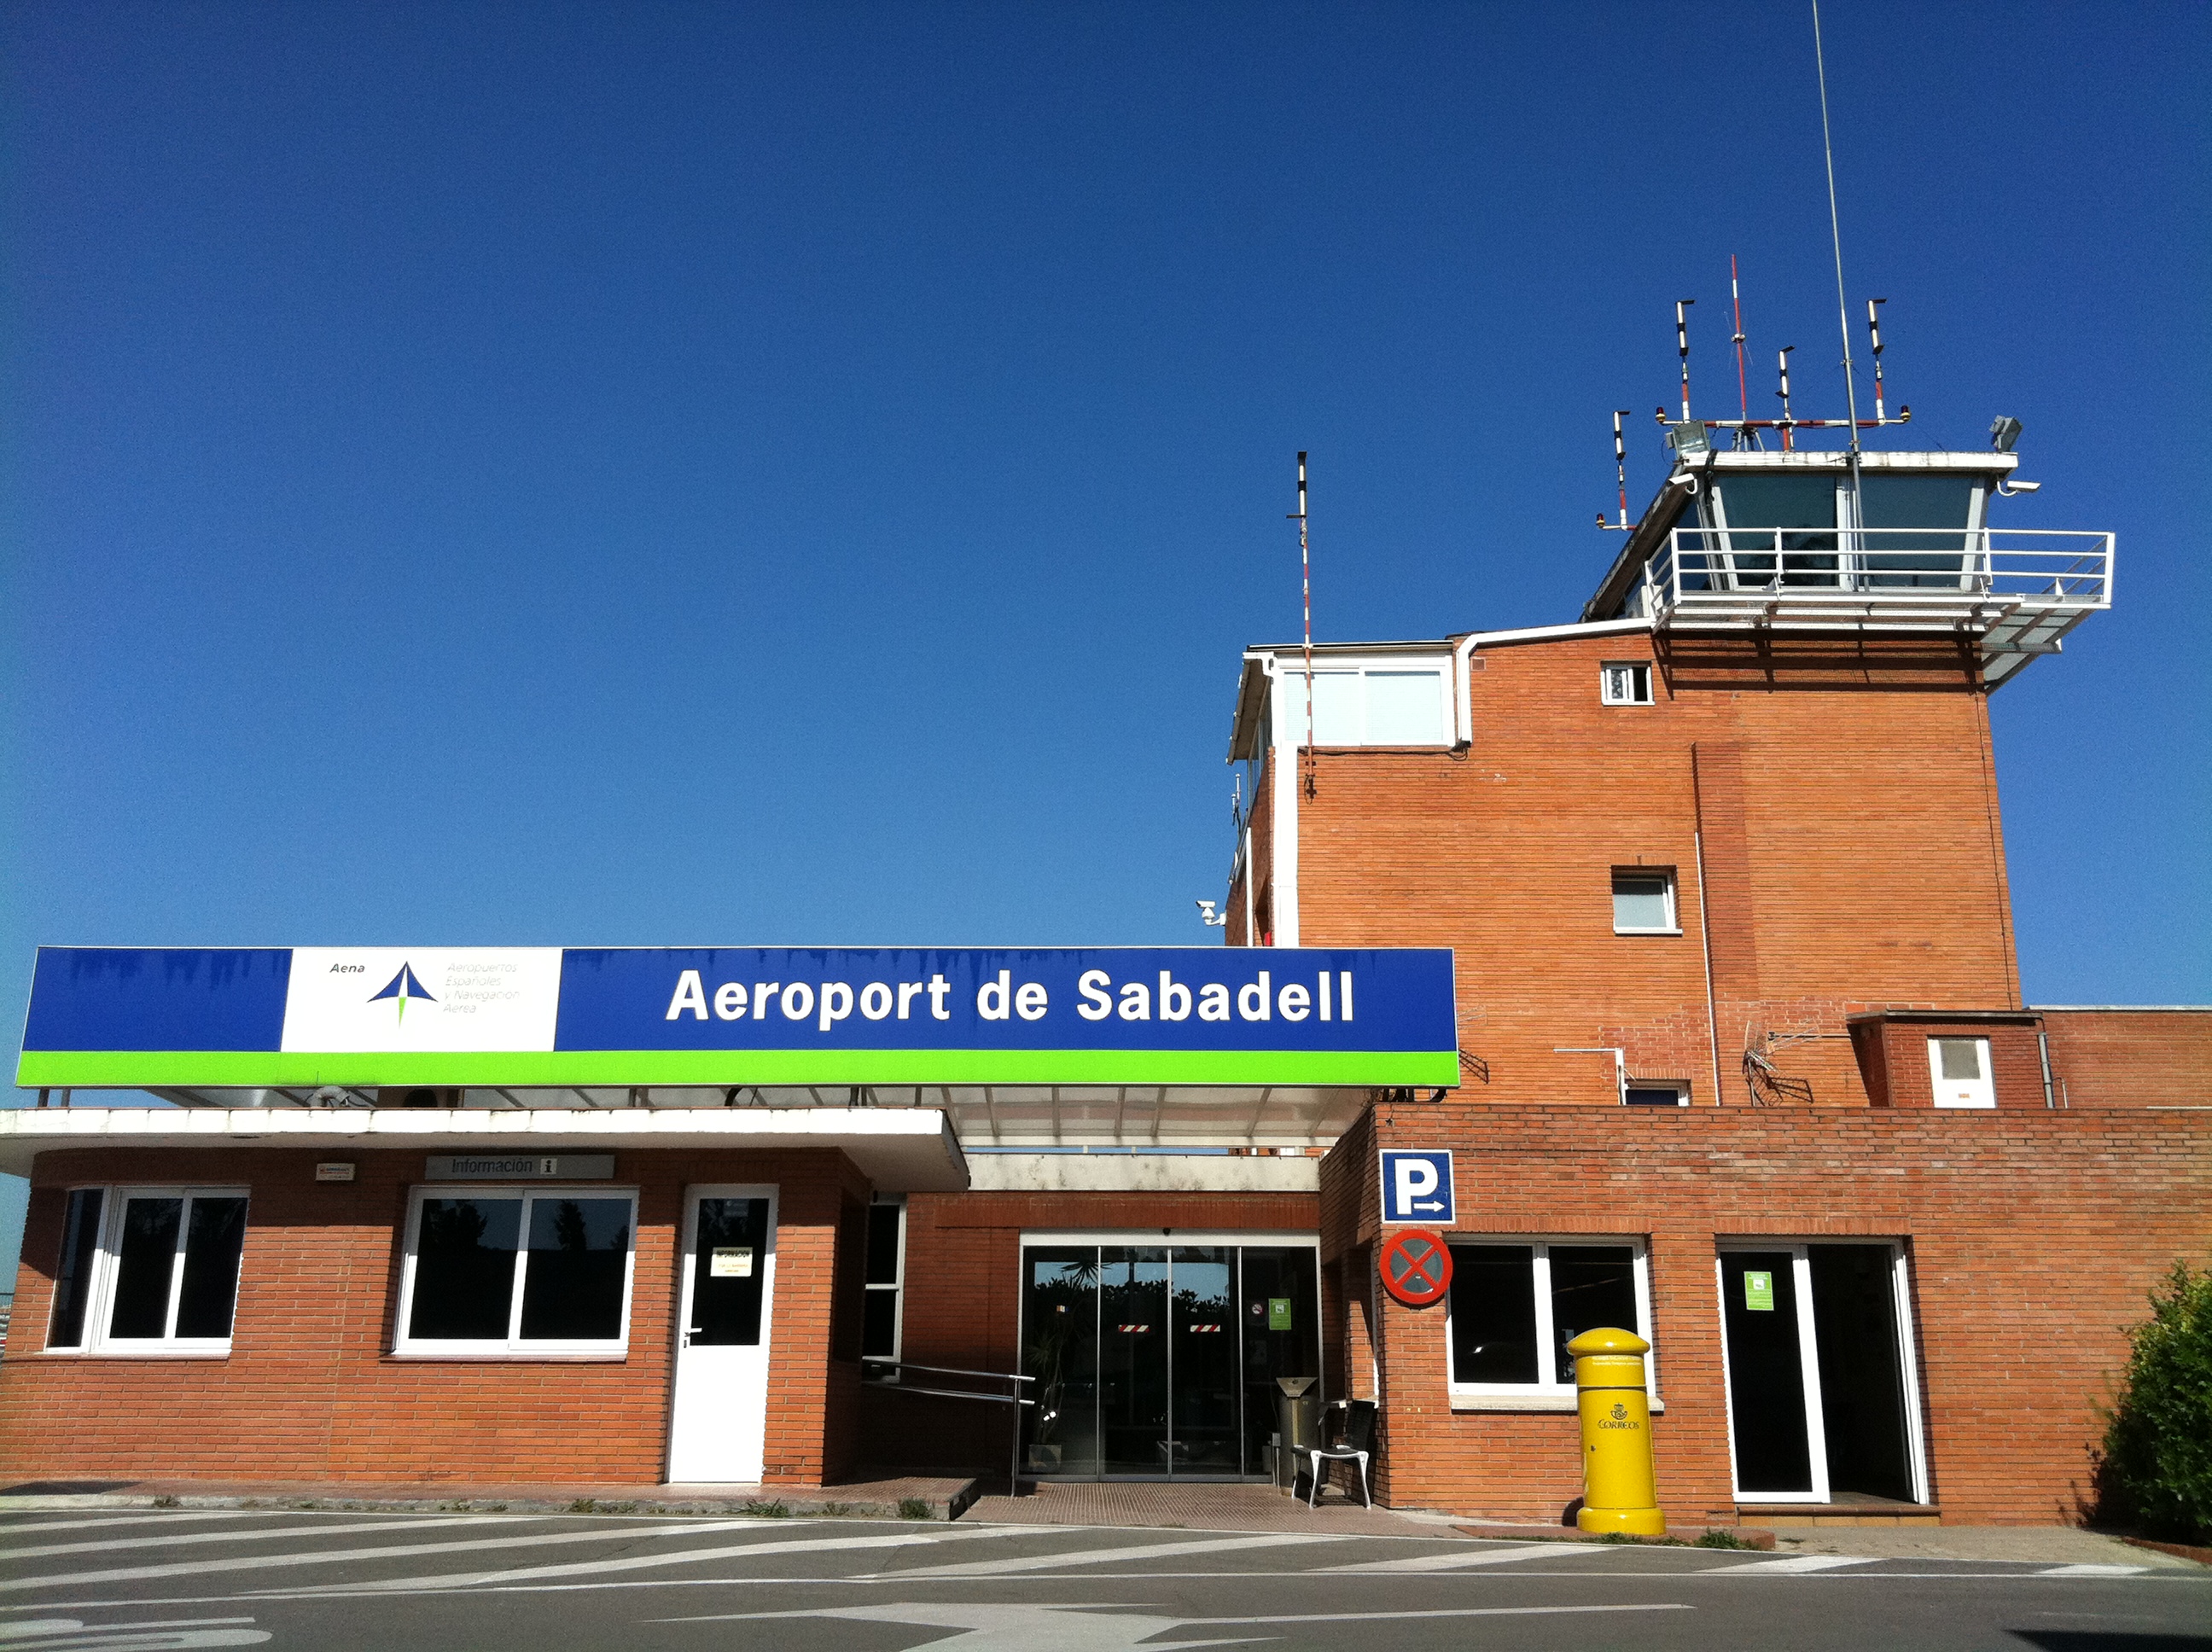 Els veïns dels voltants de l'Aeroport de Sabadell se senten "insegurs" després del darrer accident d'una avioneta a la zona